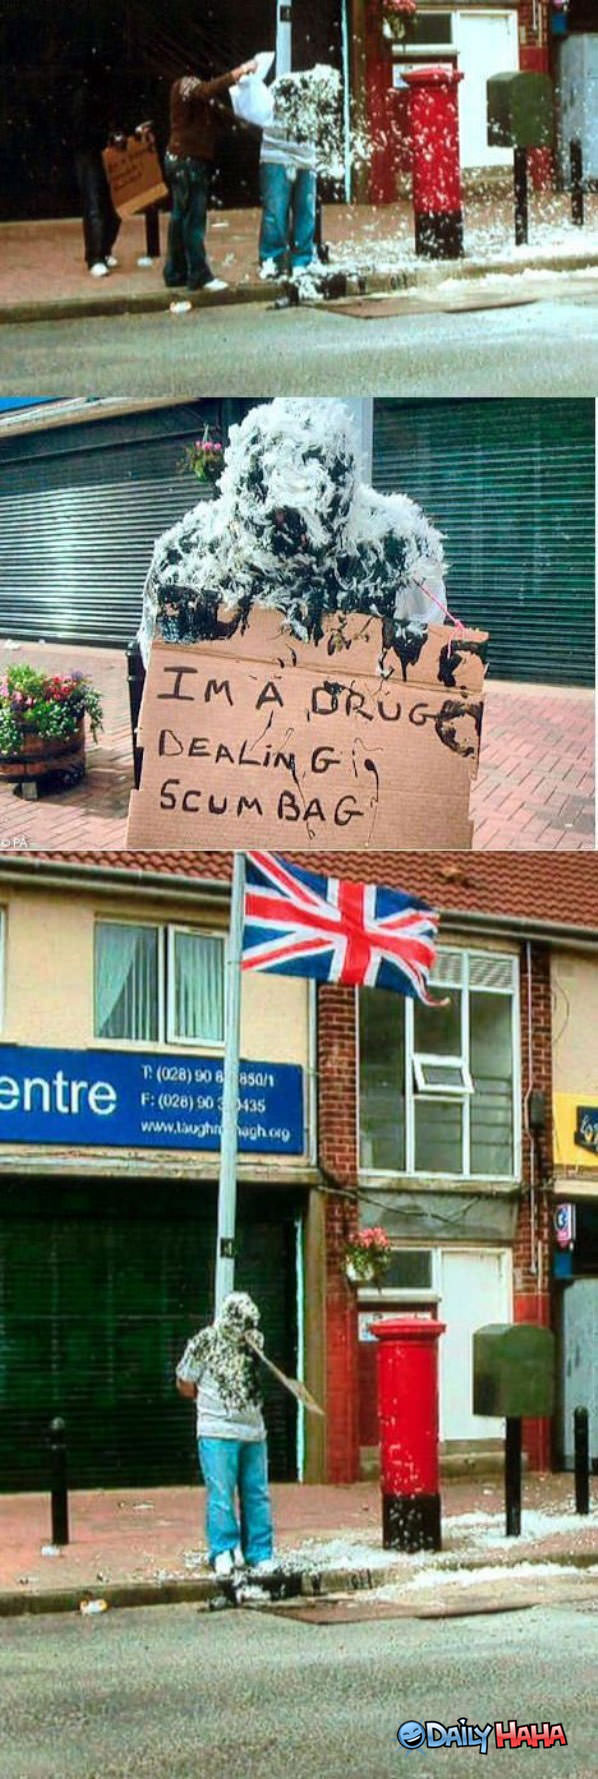 Scum Bag funny picture